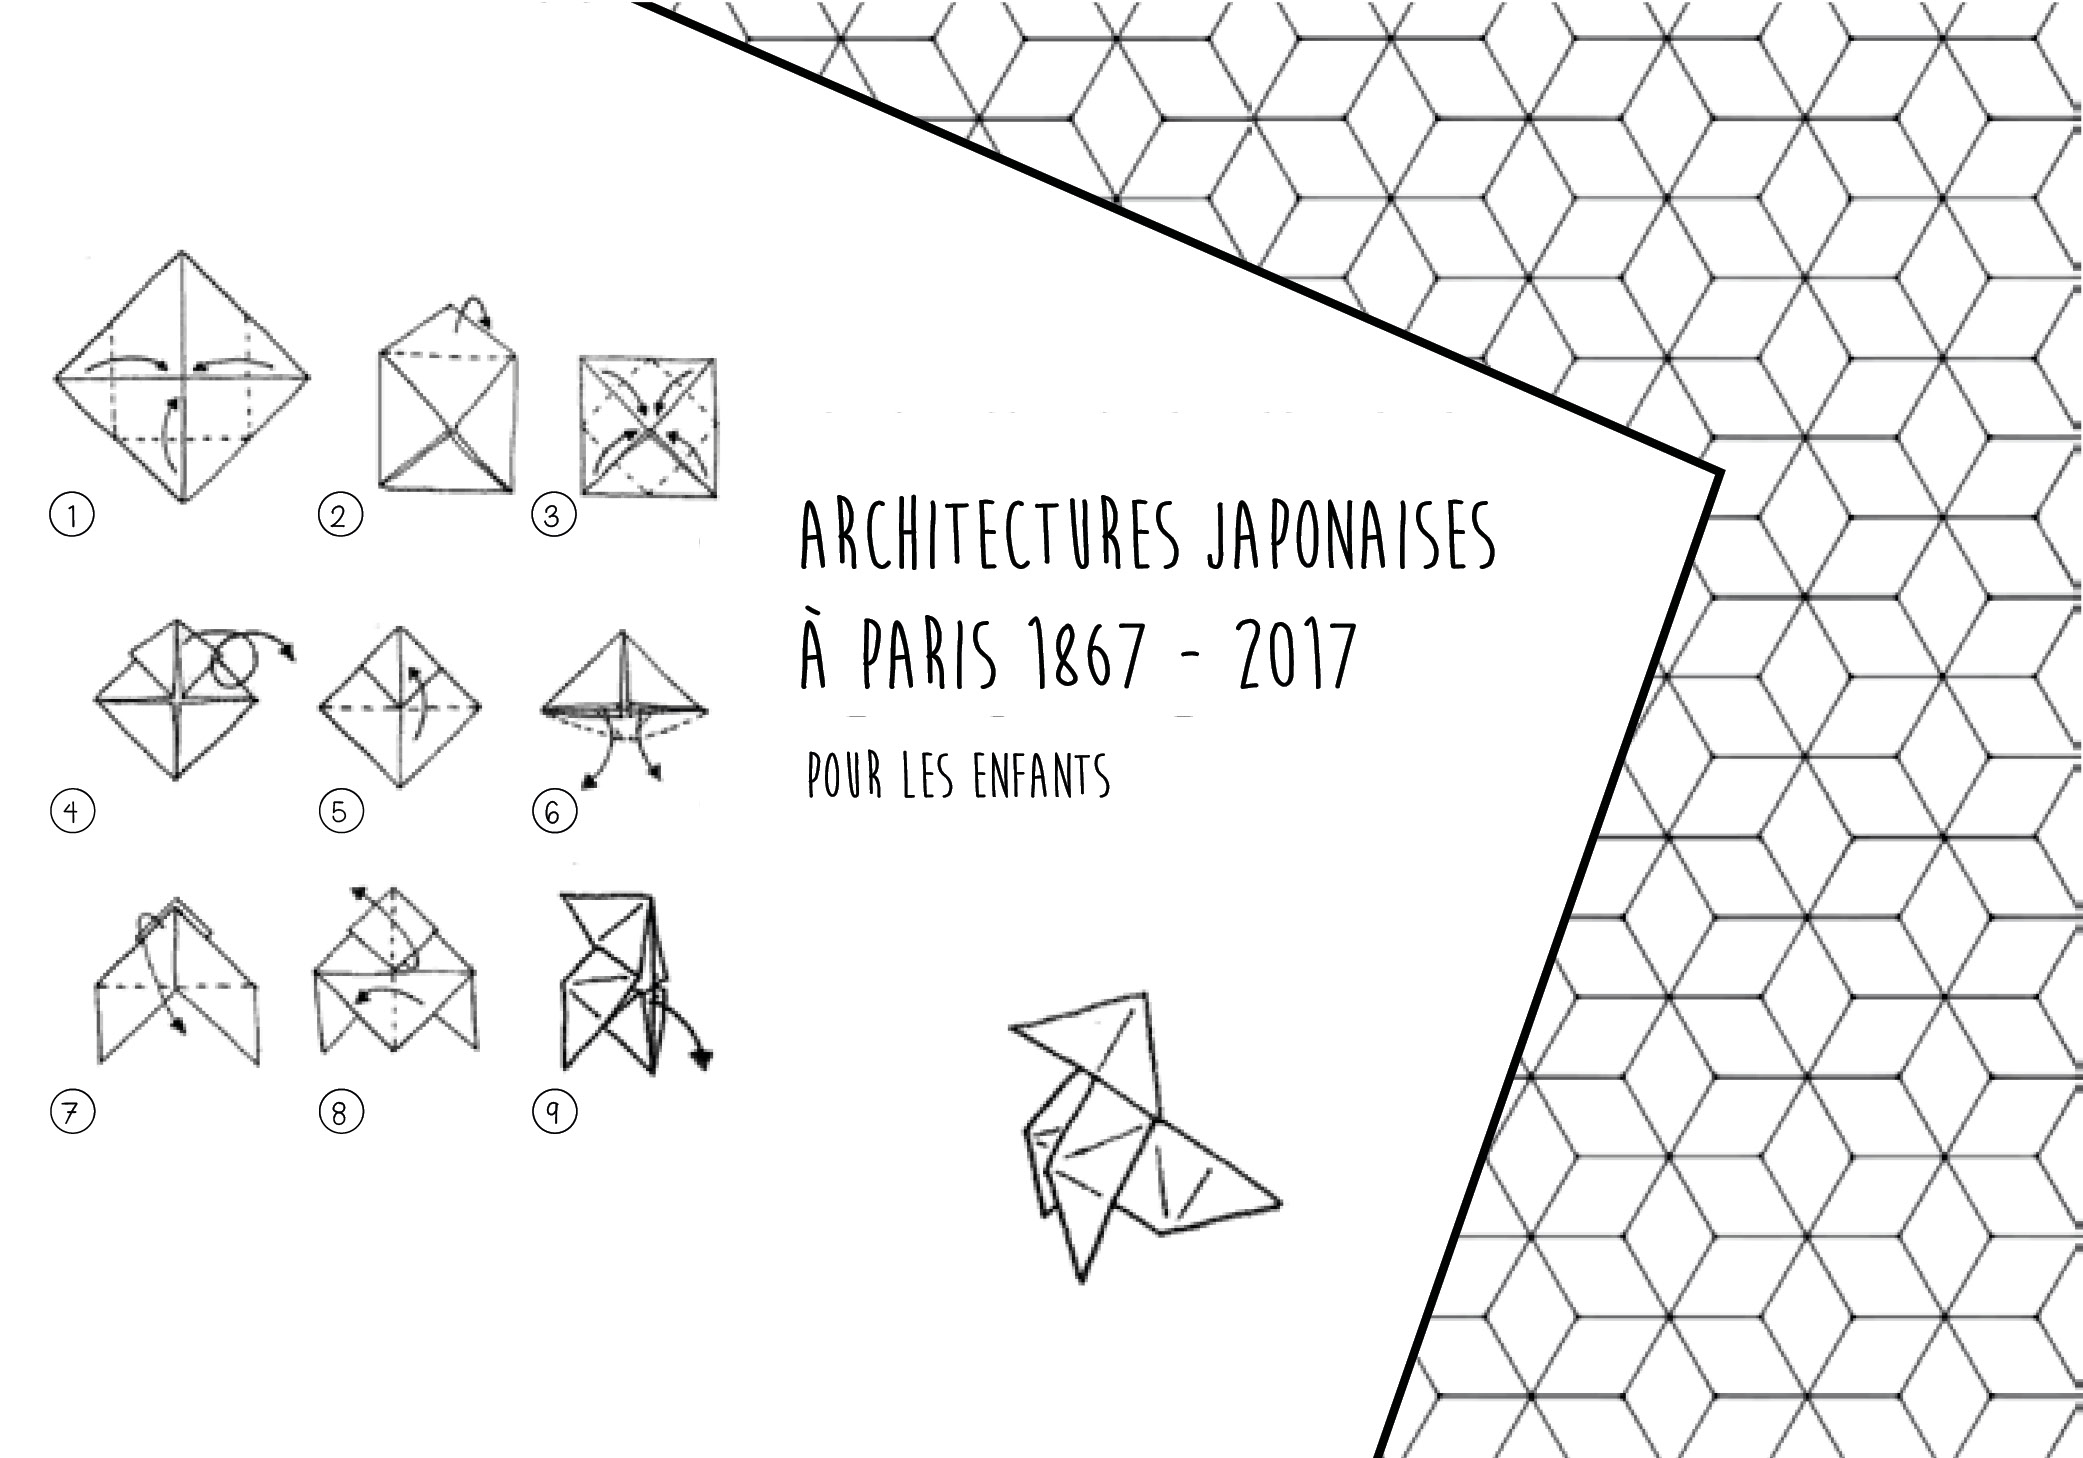 Architectures japonaises pour les enfants